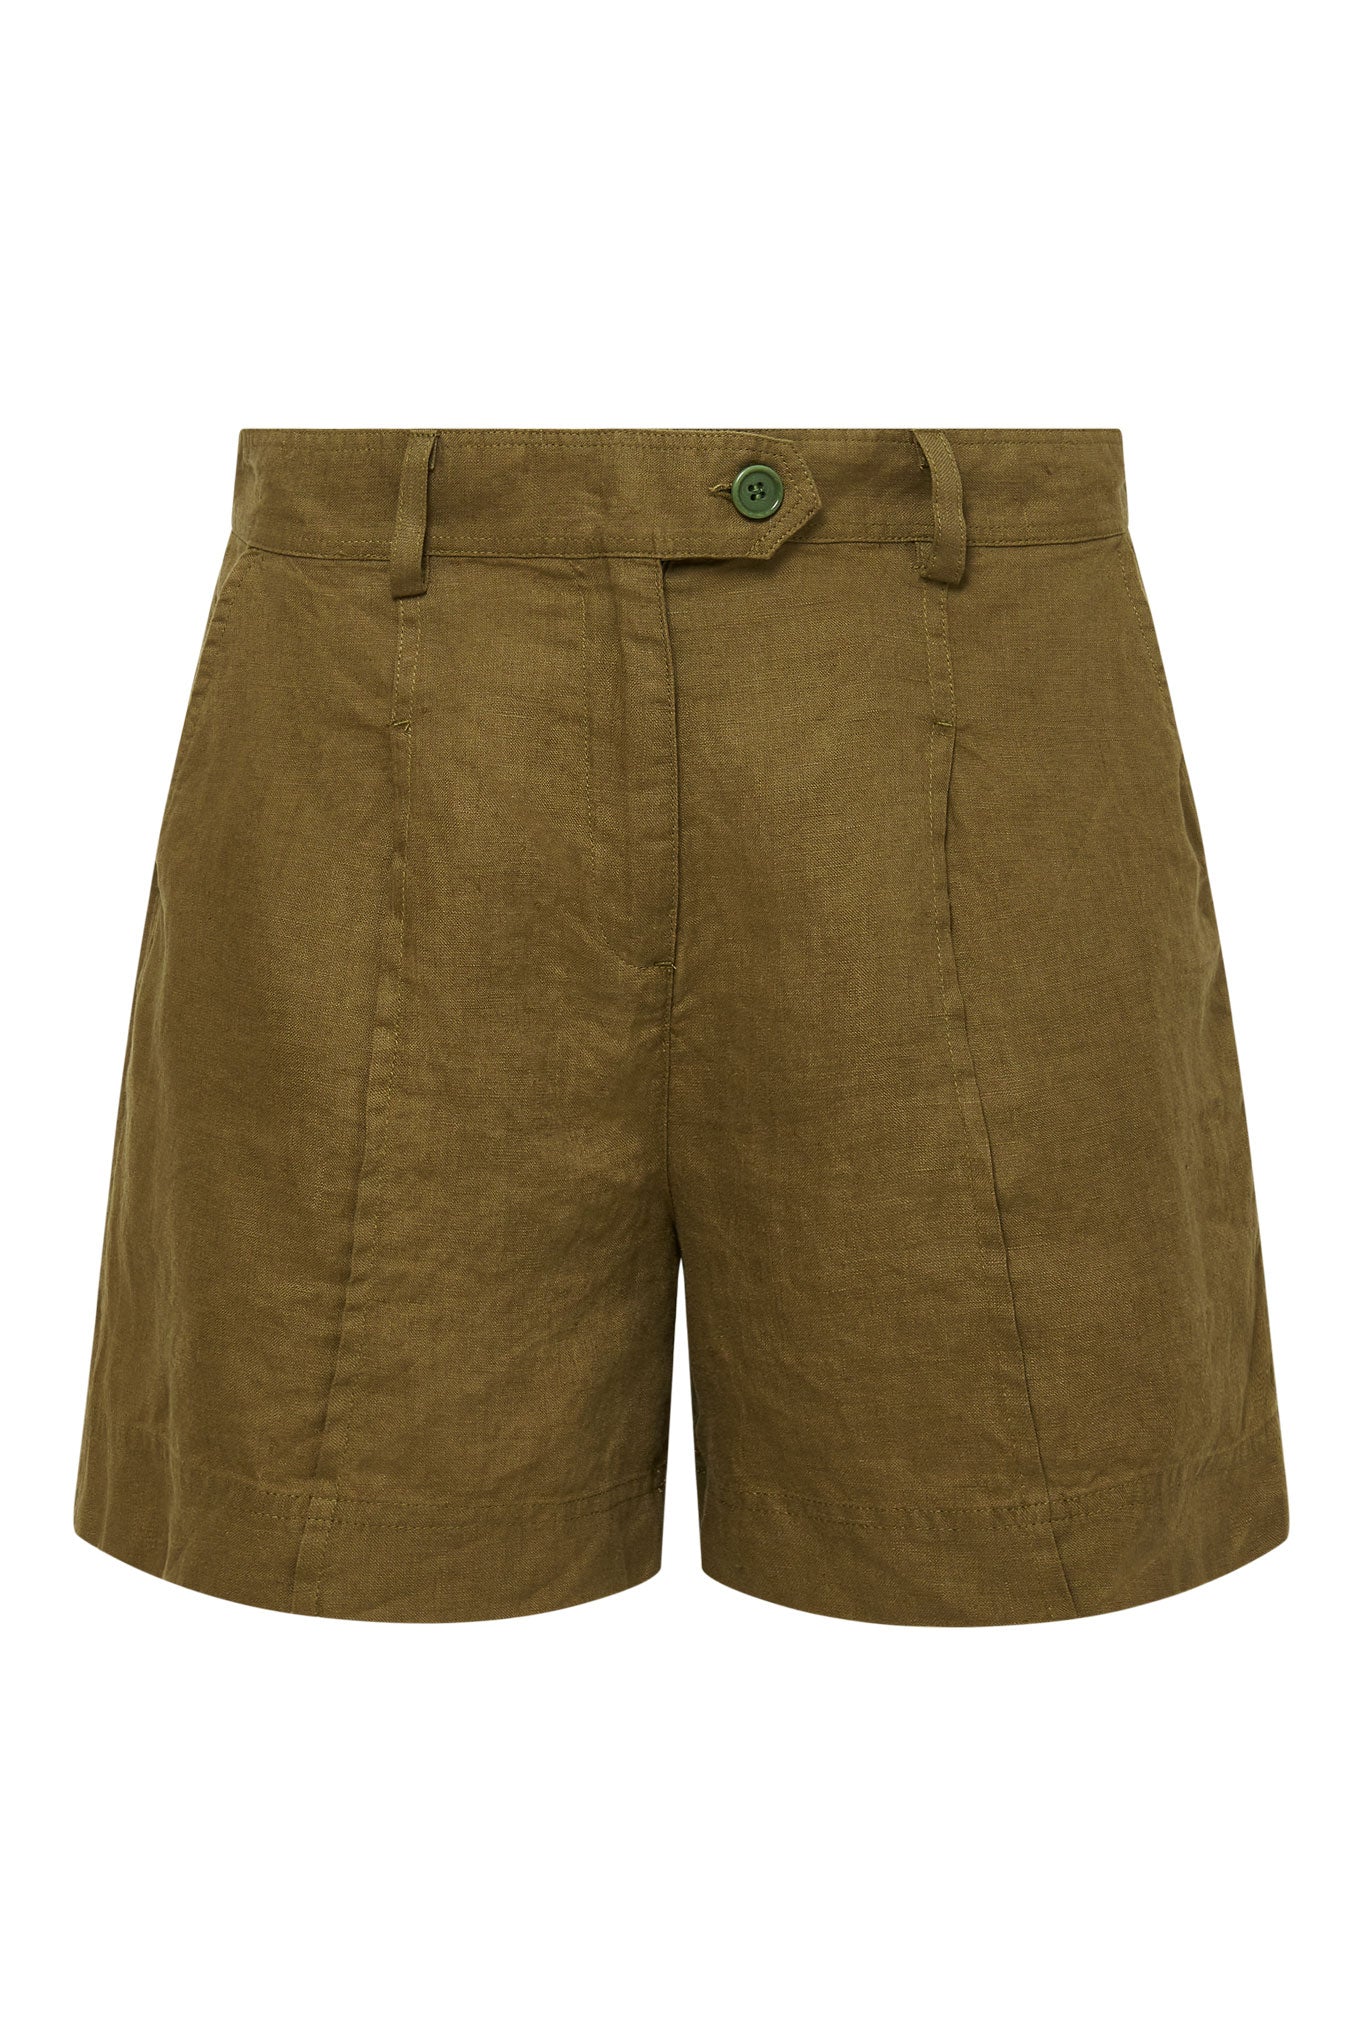 Braune shorts EMMIE aus 100% Leinen von Komodo